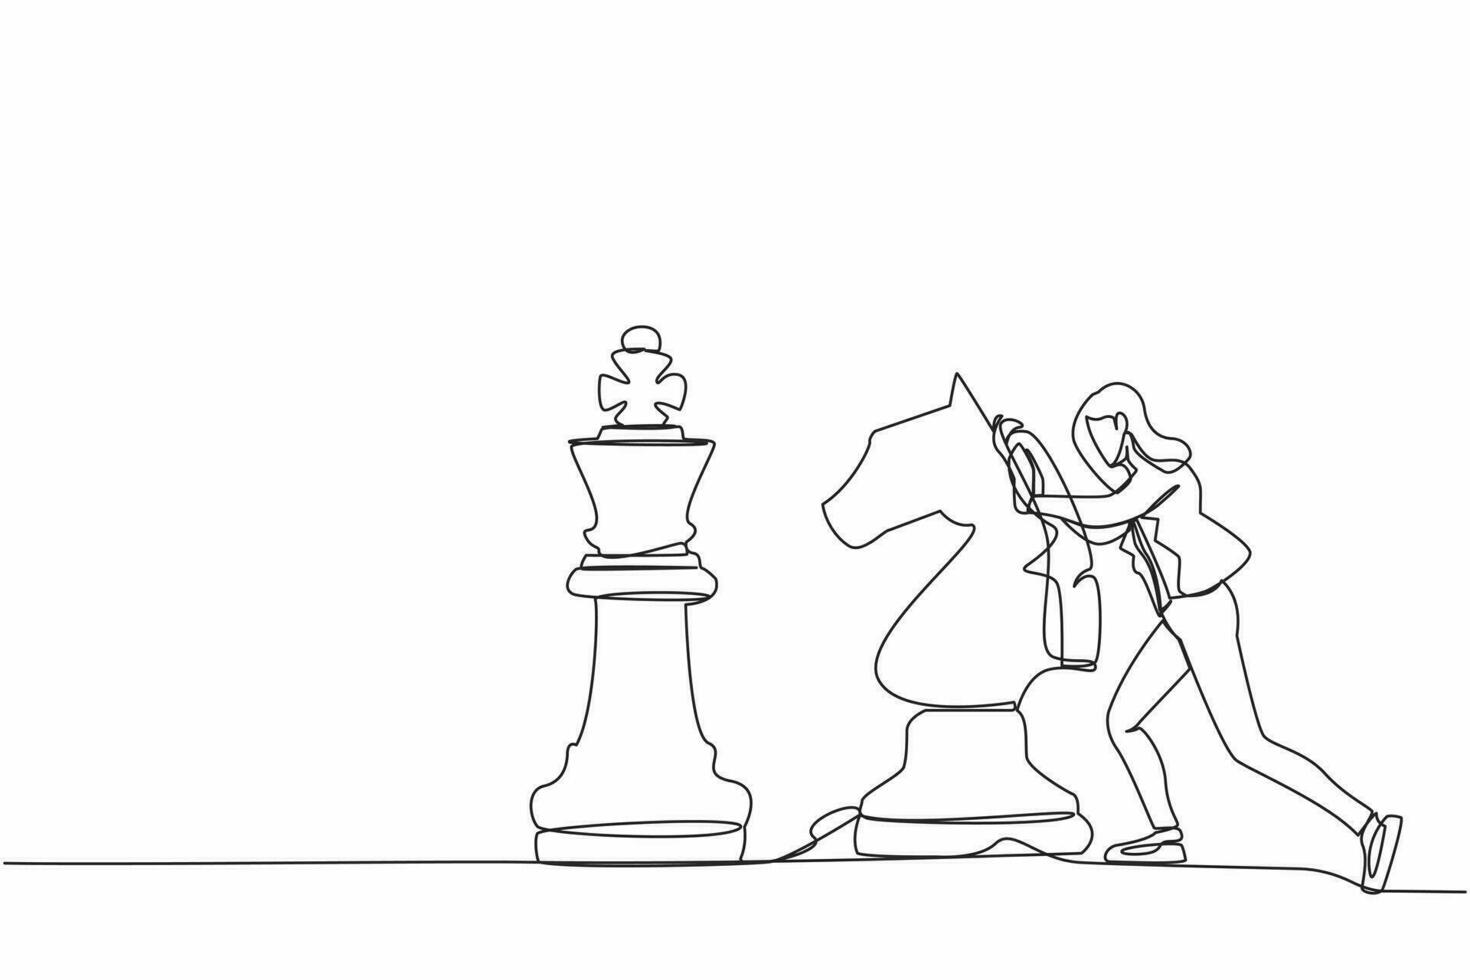 Single einer Linie Zeichnung glücklich Geschäftsfrau drücken enorm Pferd Schach Stück zu schlagen König. strategisch Denken und Clever Bewegung im Geschäft abspielen Spiel. kontinuierlich Linie zeichnen Design Grafik Vektor Illustration